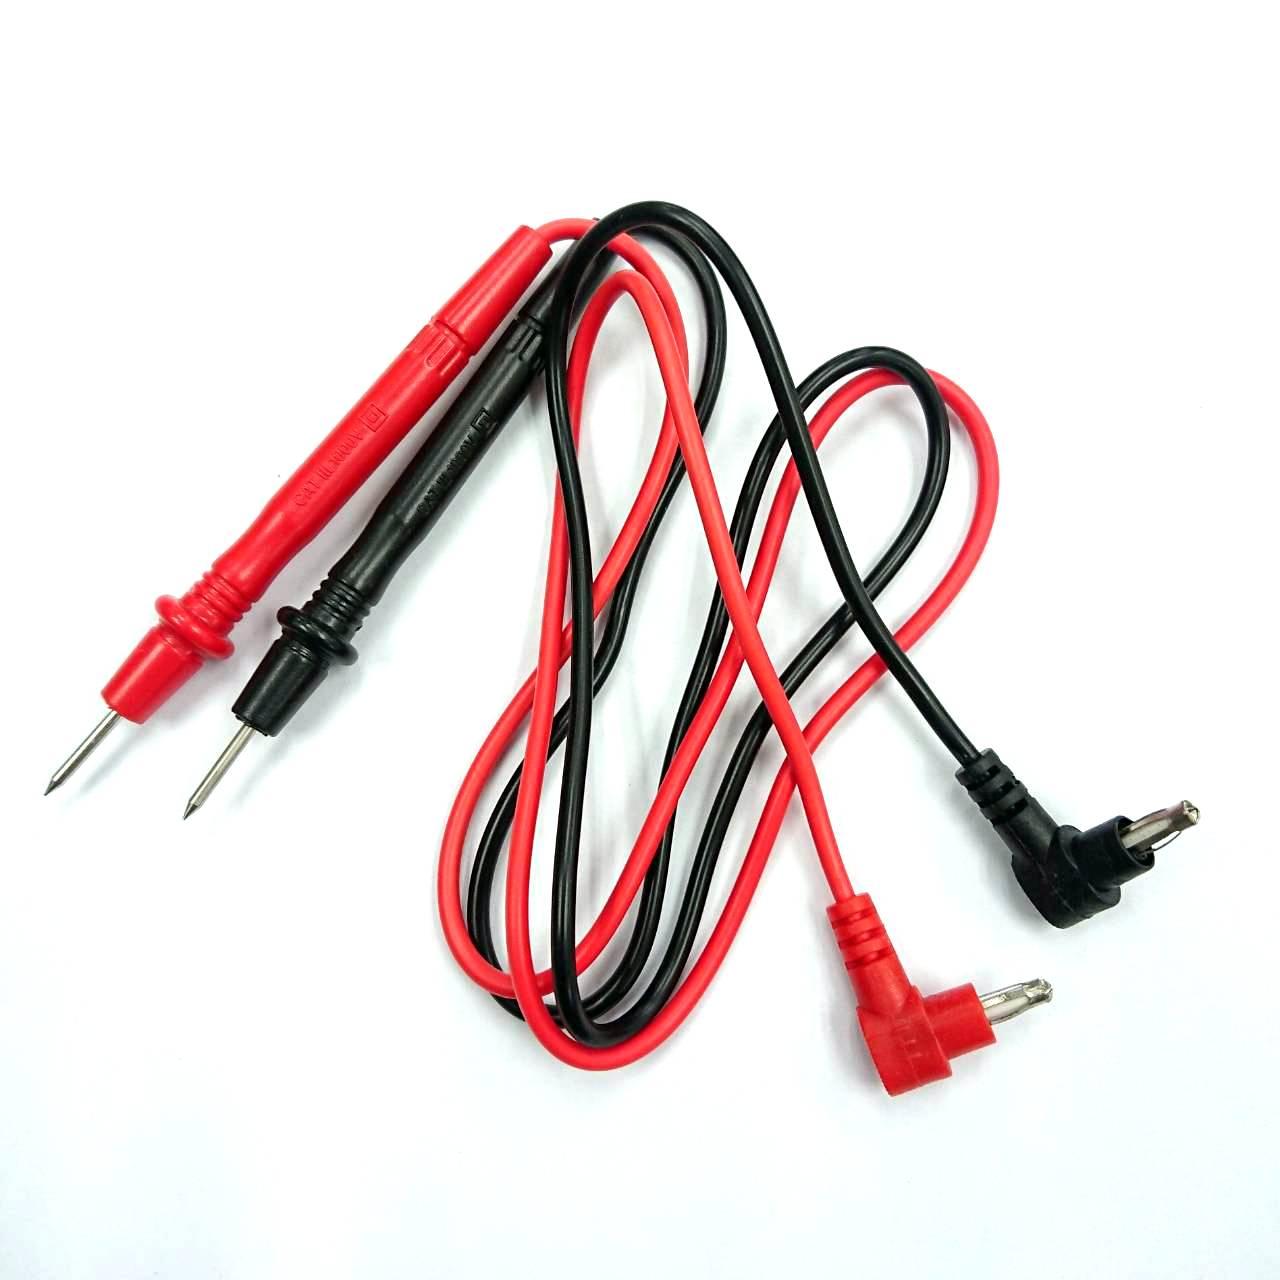 soong shop สายวัดมิเตอร์ สายวัดมัลติมิเตอร์ Practical Multi Meter Test Pen Cable Universal Digital Multimeter Lead Probe Wire